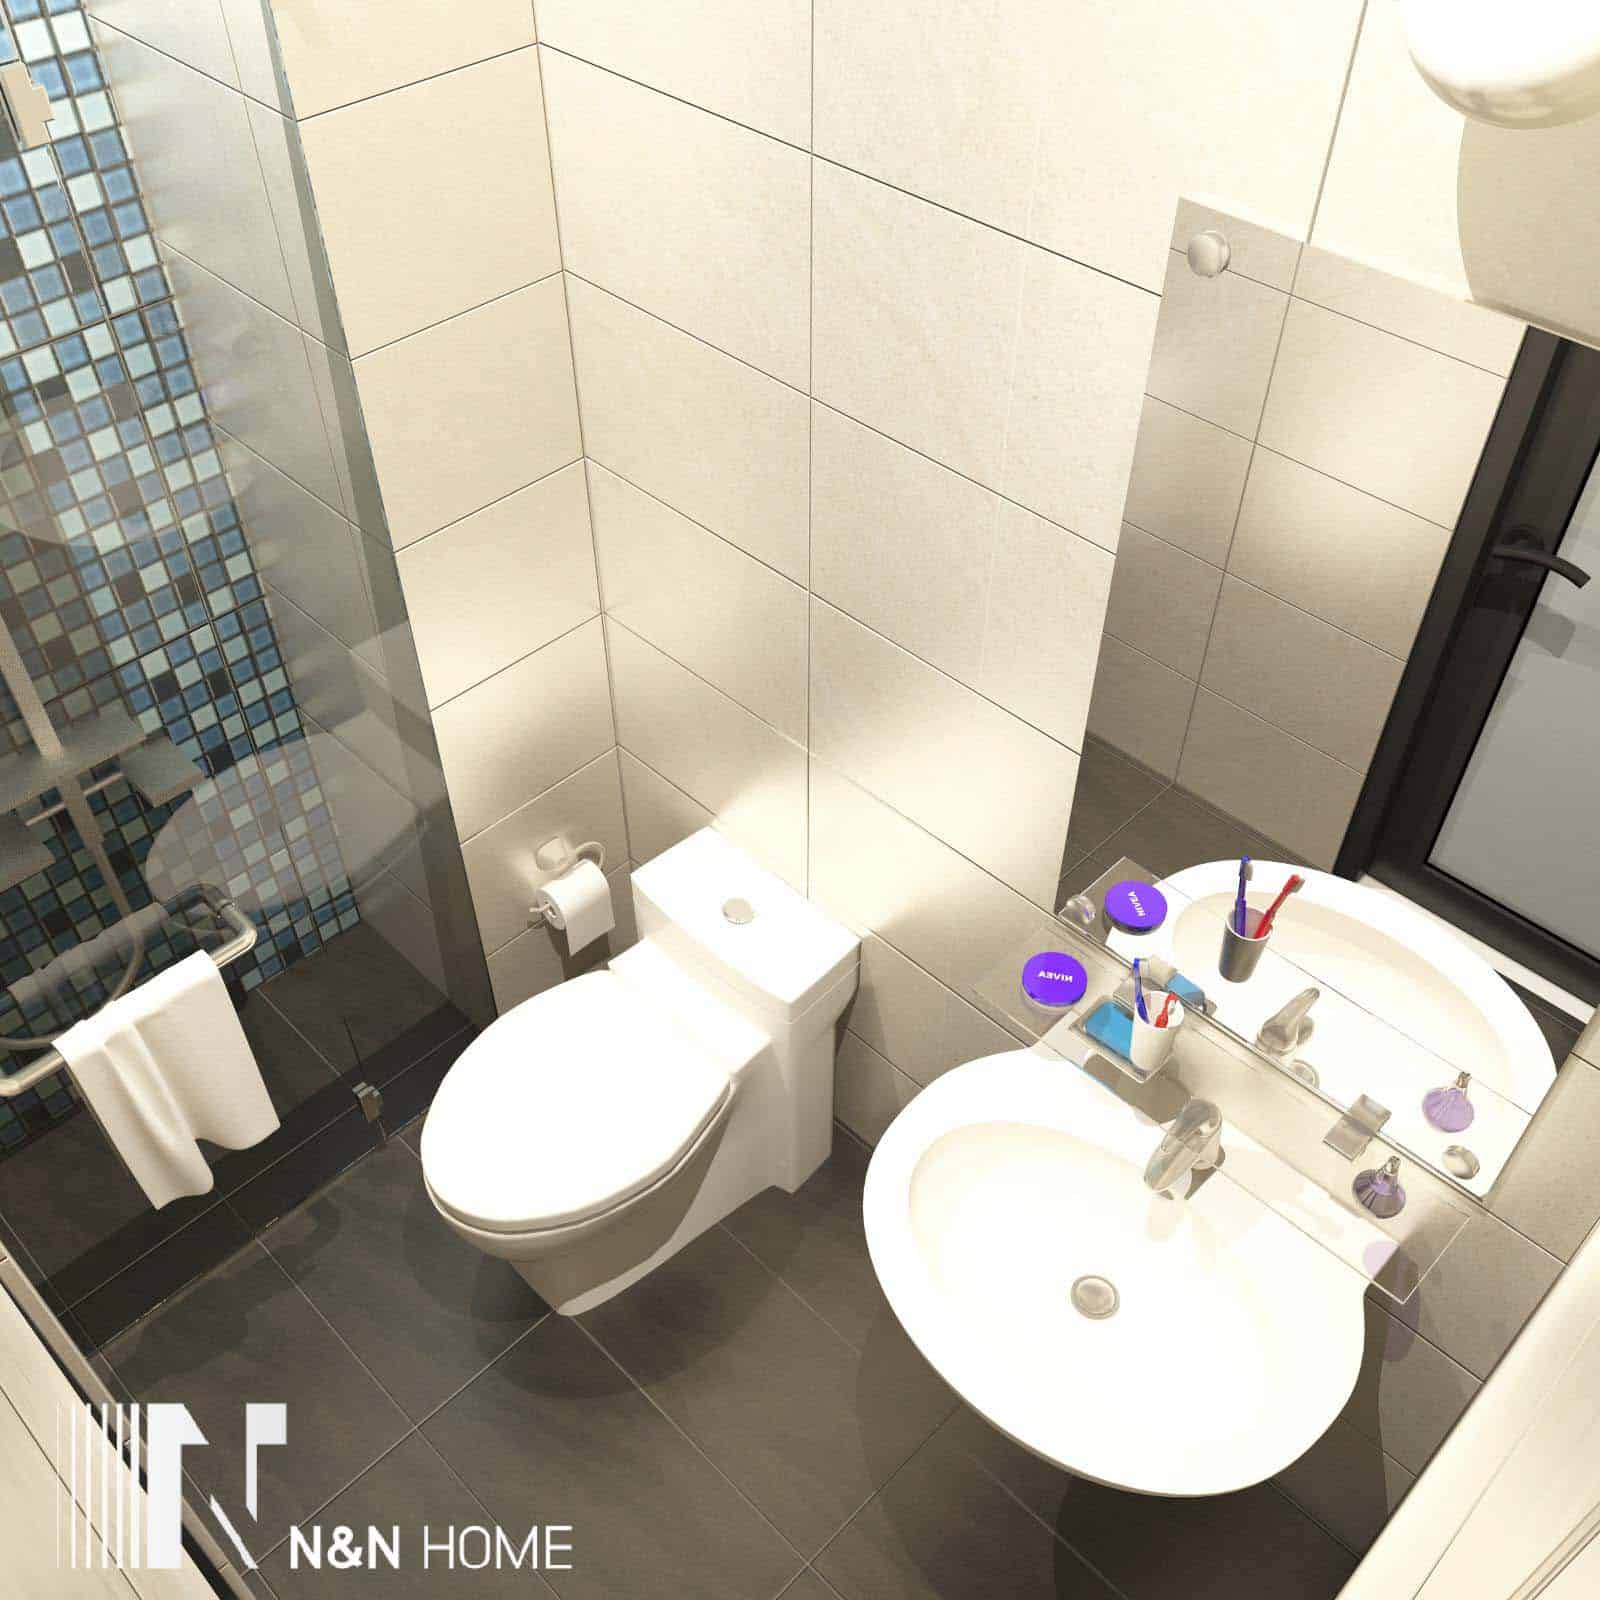 WC ngôi nhà 4m x 5m N&N Home xây dựng ở Tân Phú thoải mái, tiện nghi – 1